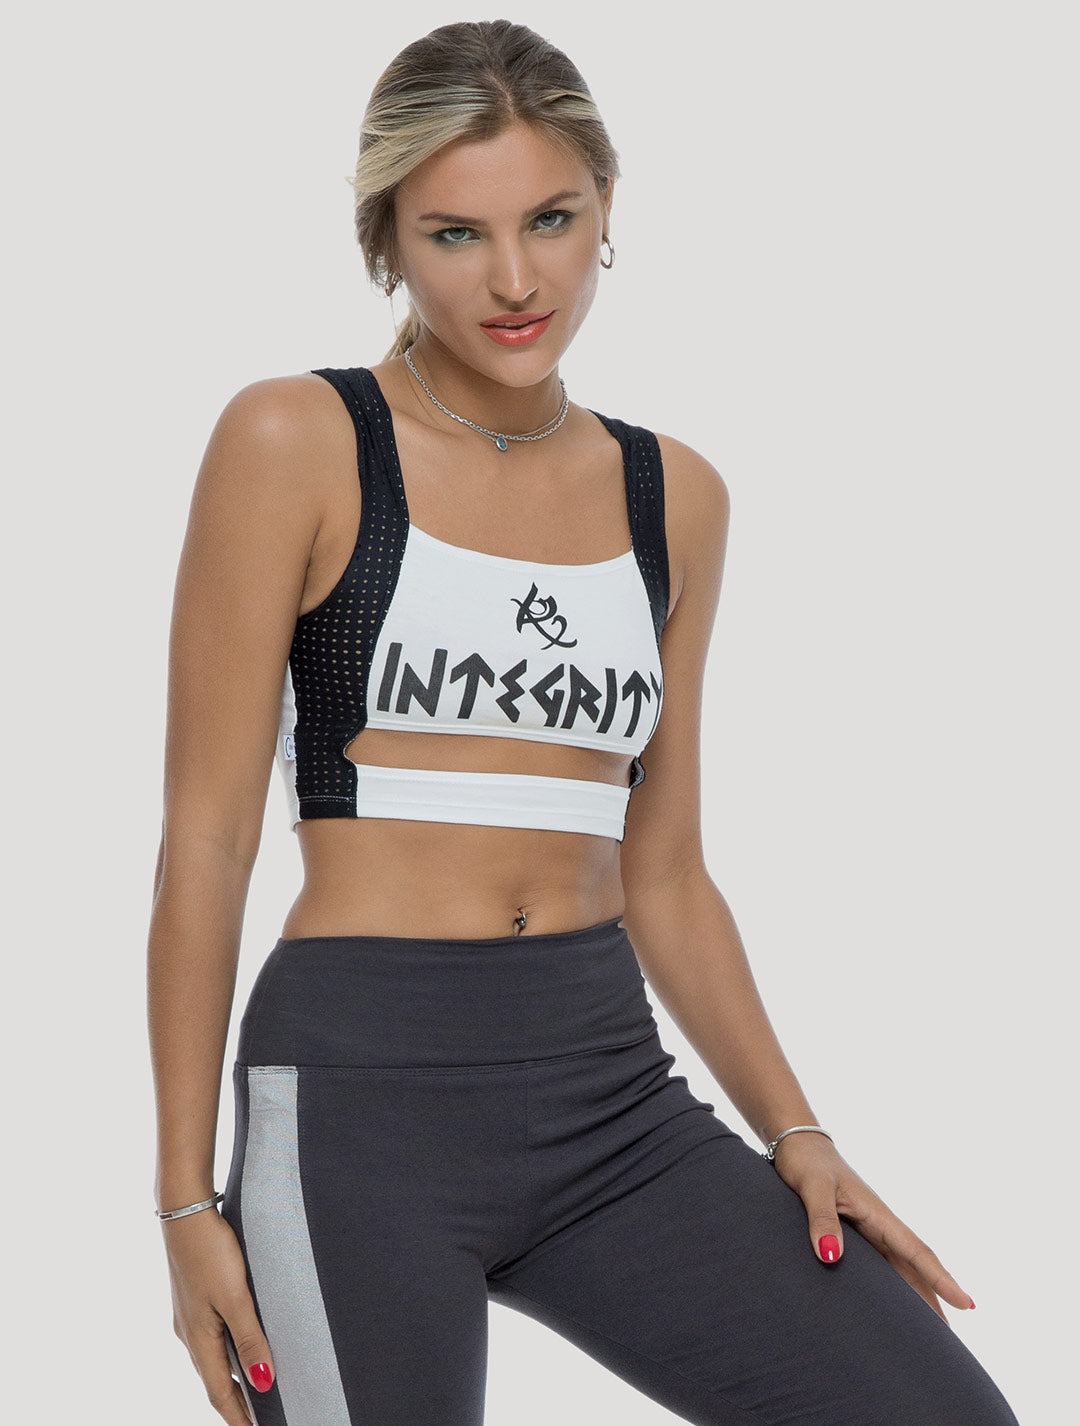 Integrity Workout Crop Top - Psylo Fashion